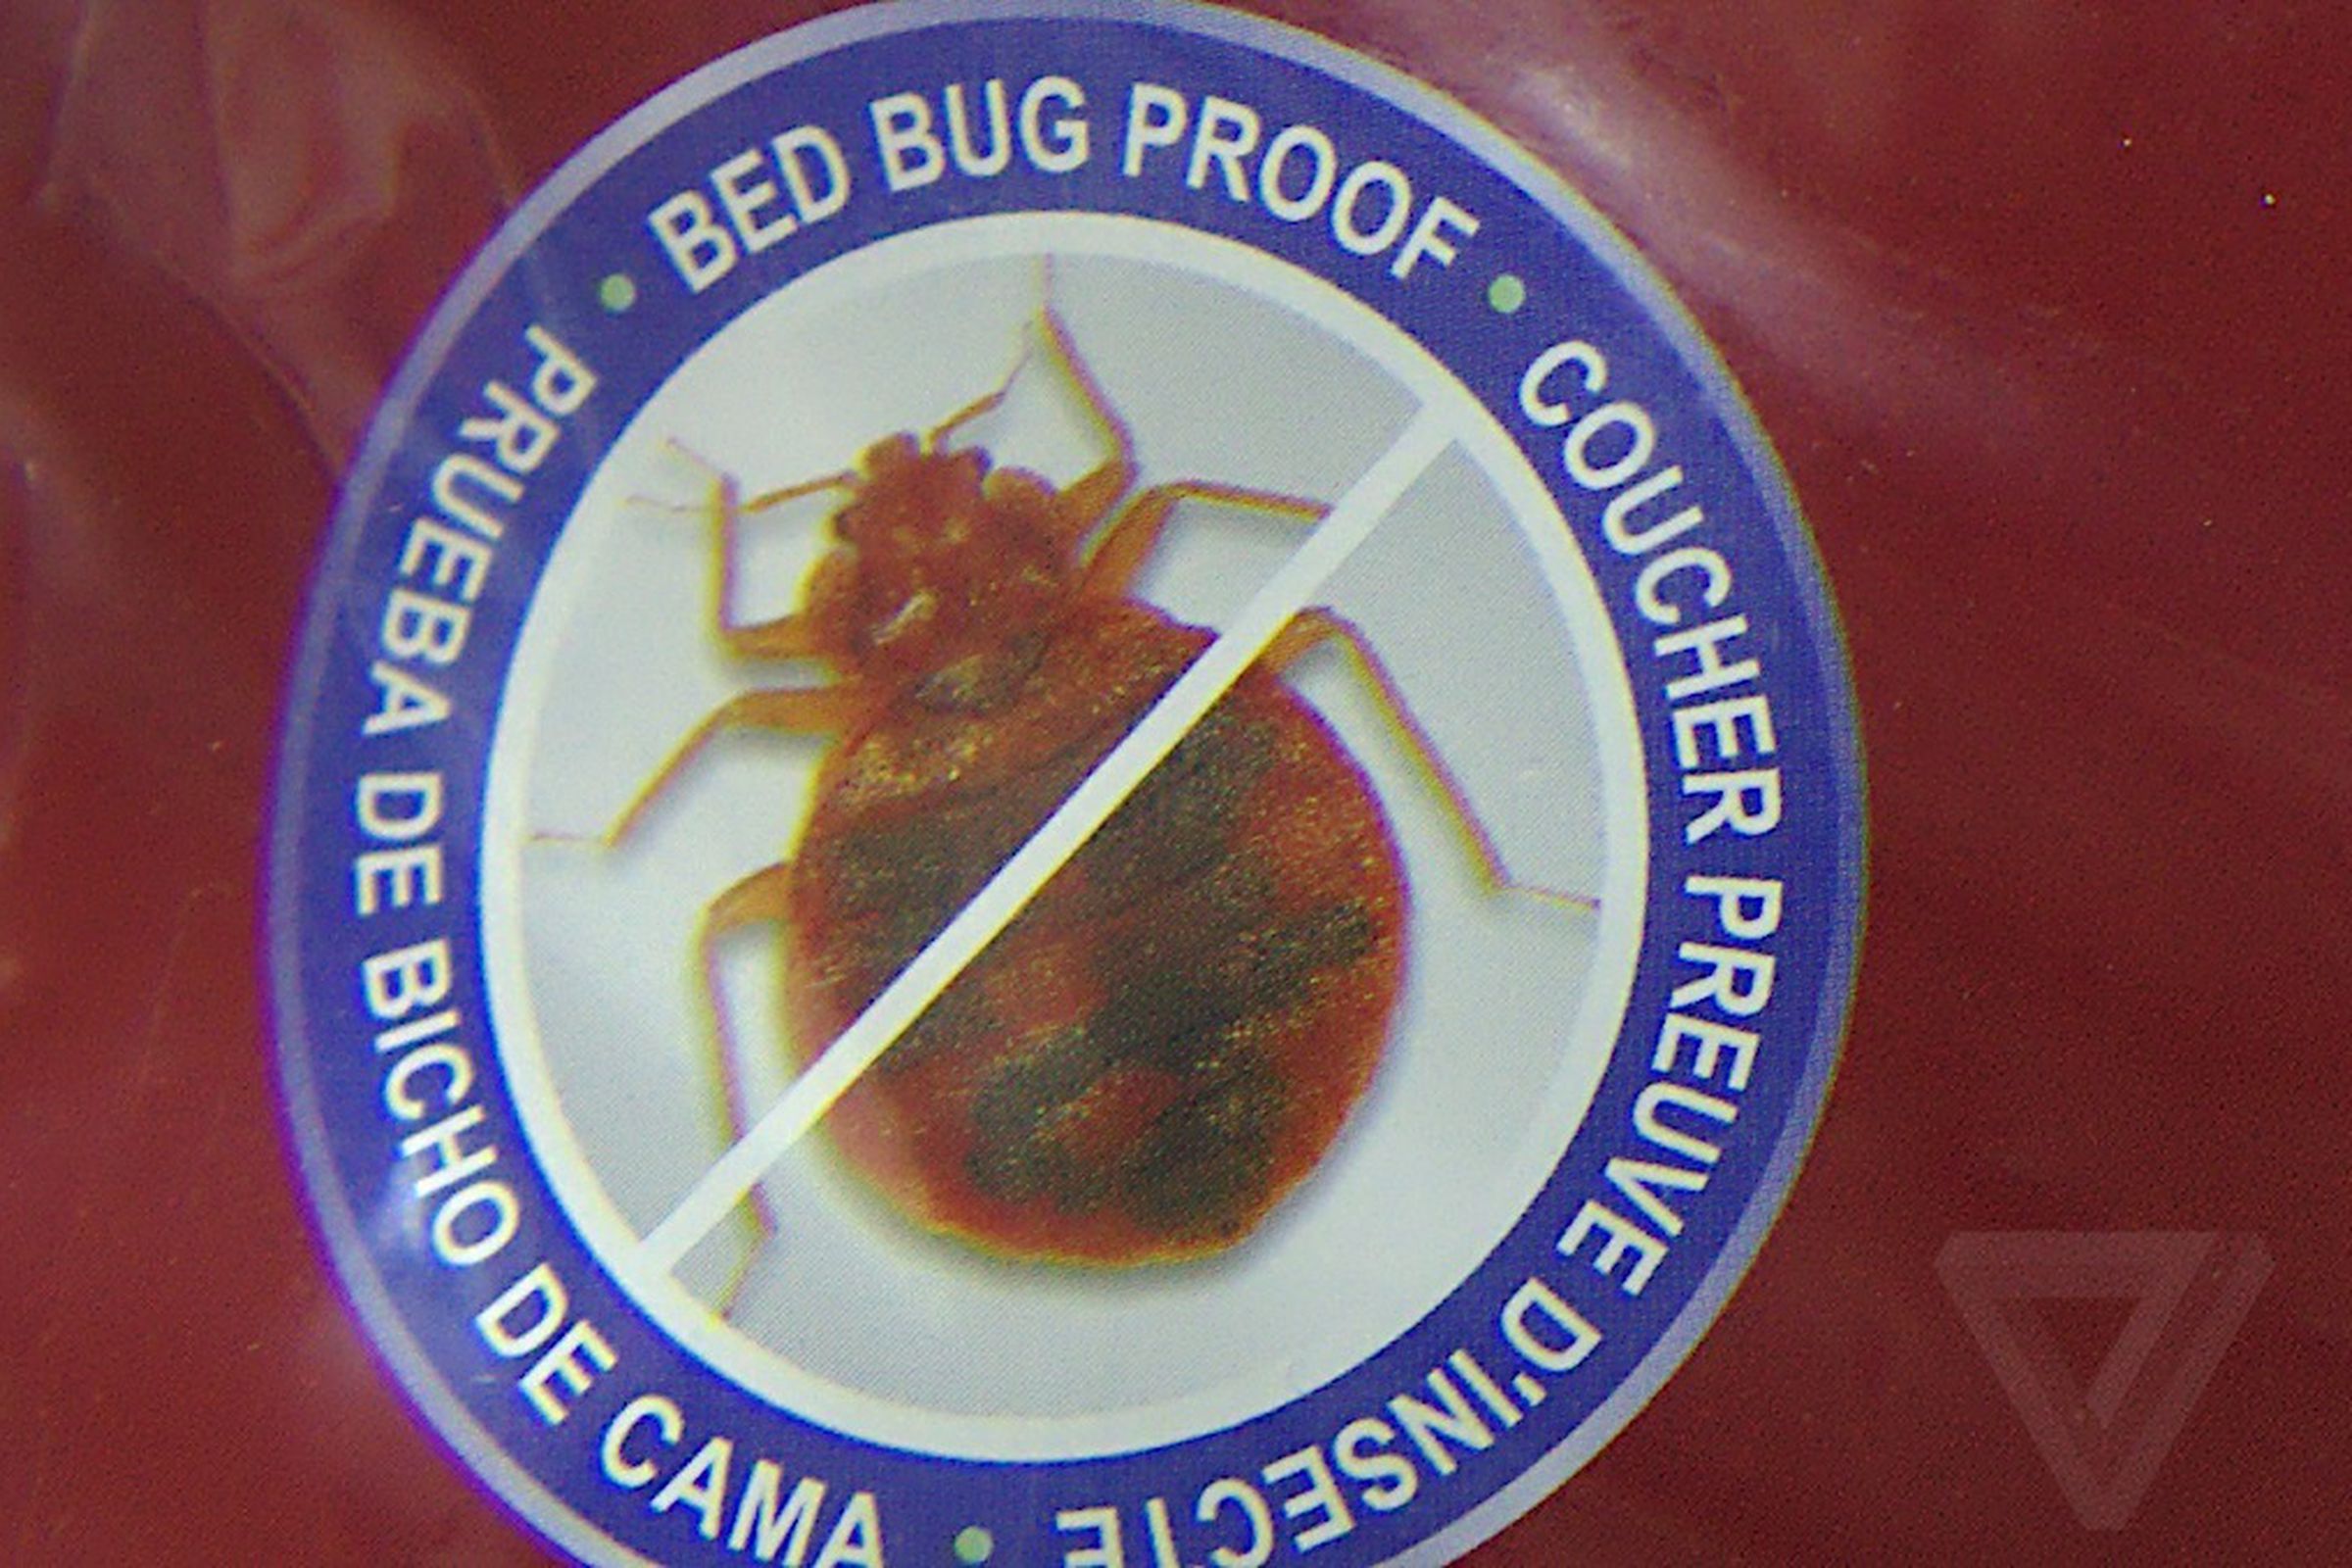 bedbug1